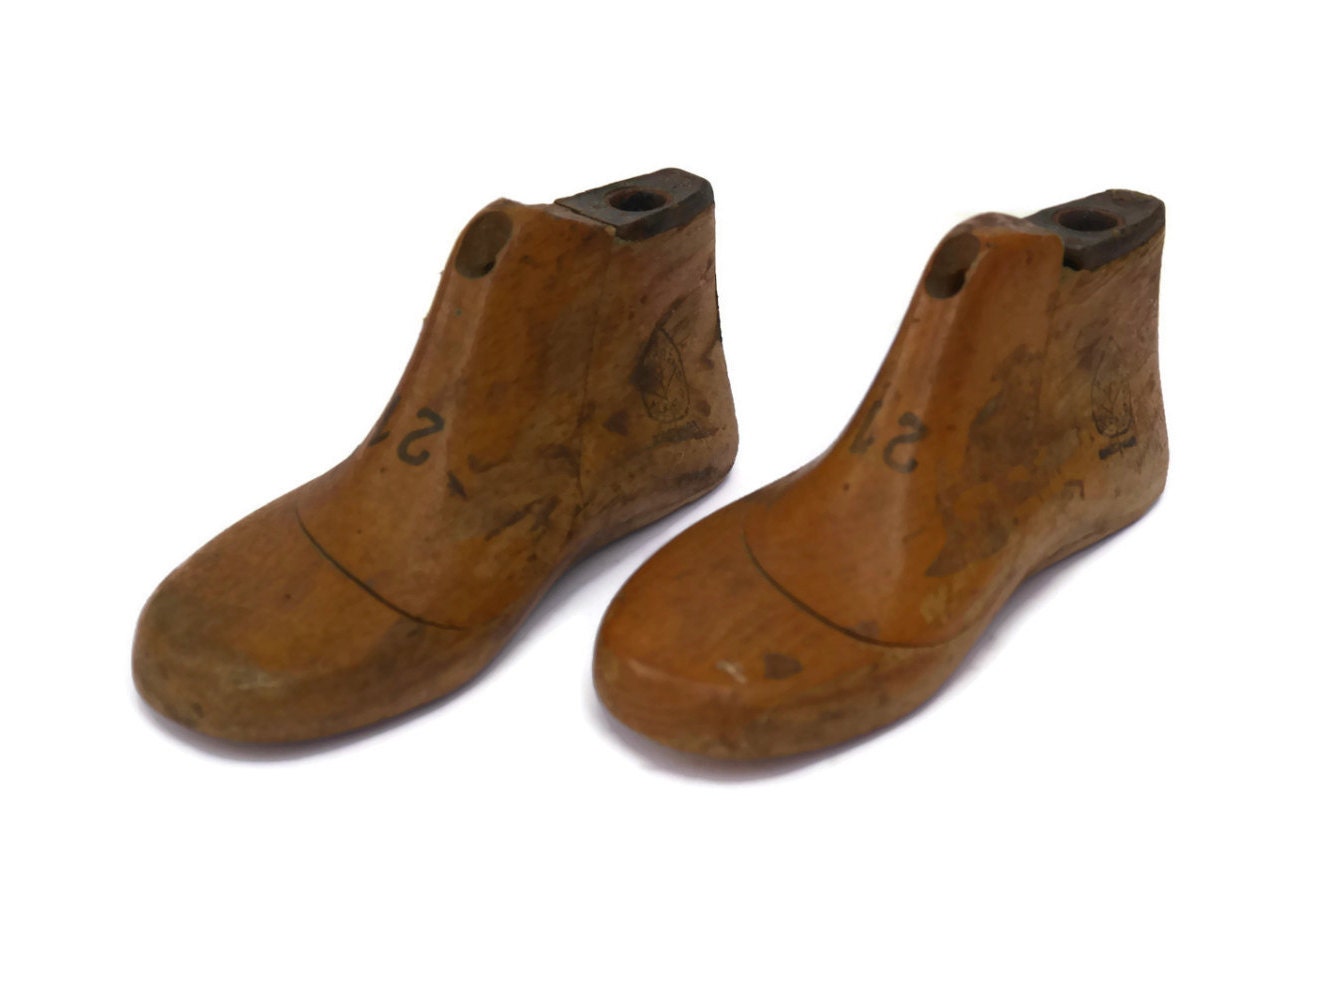 antique-childrens-shoe-forms-wooden-shoe-lasts-wood-shoe